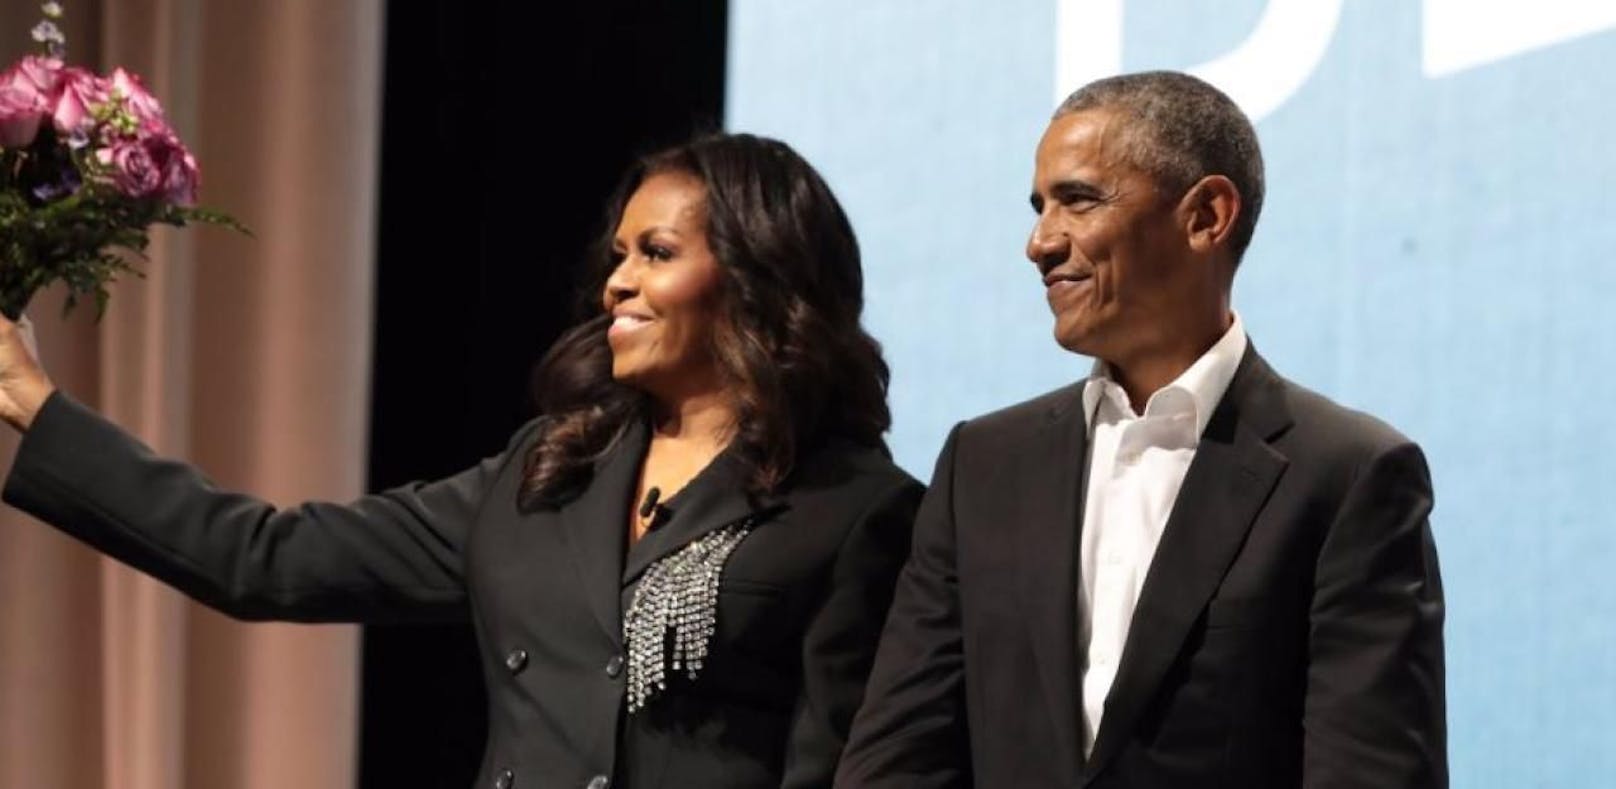 Barack Obama überrascht Michelle mit Rosenstrauß